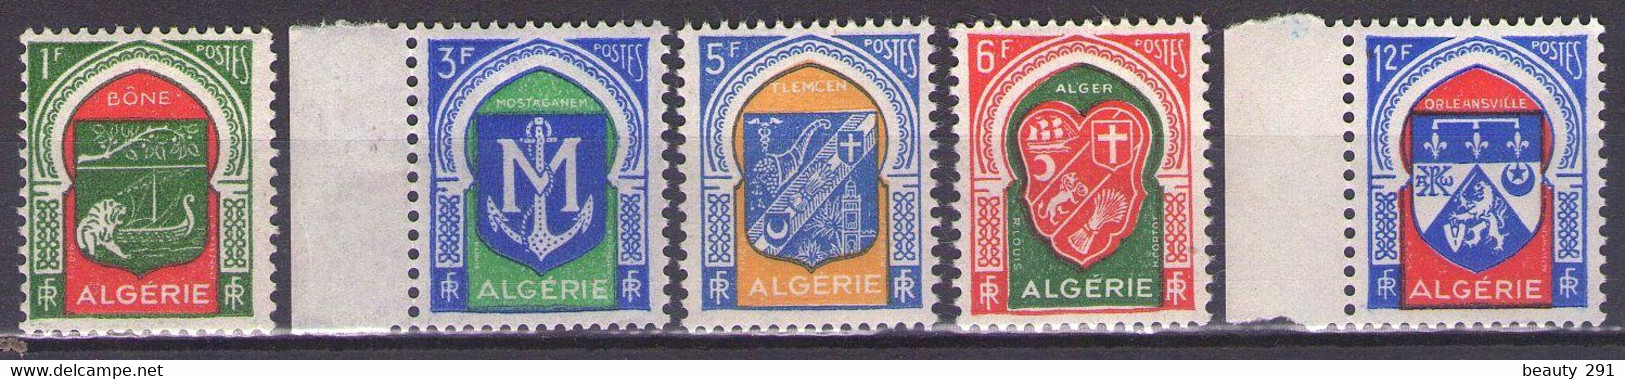 ALGERIA 1956 Mi 355-359 MNH** - Neufs